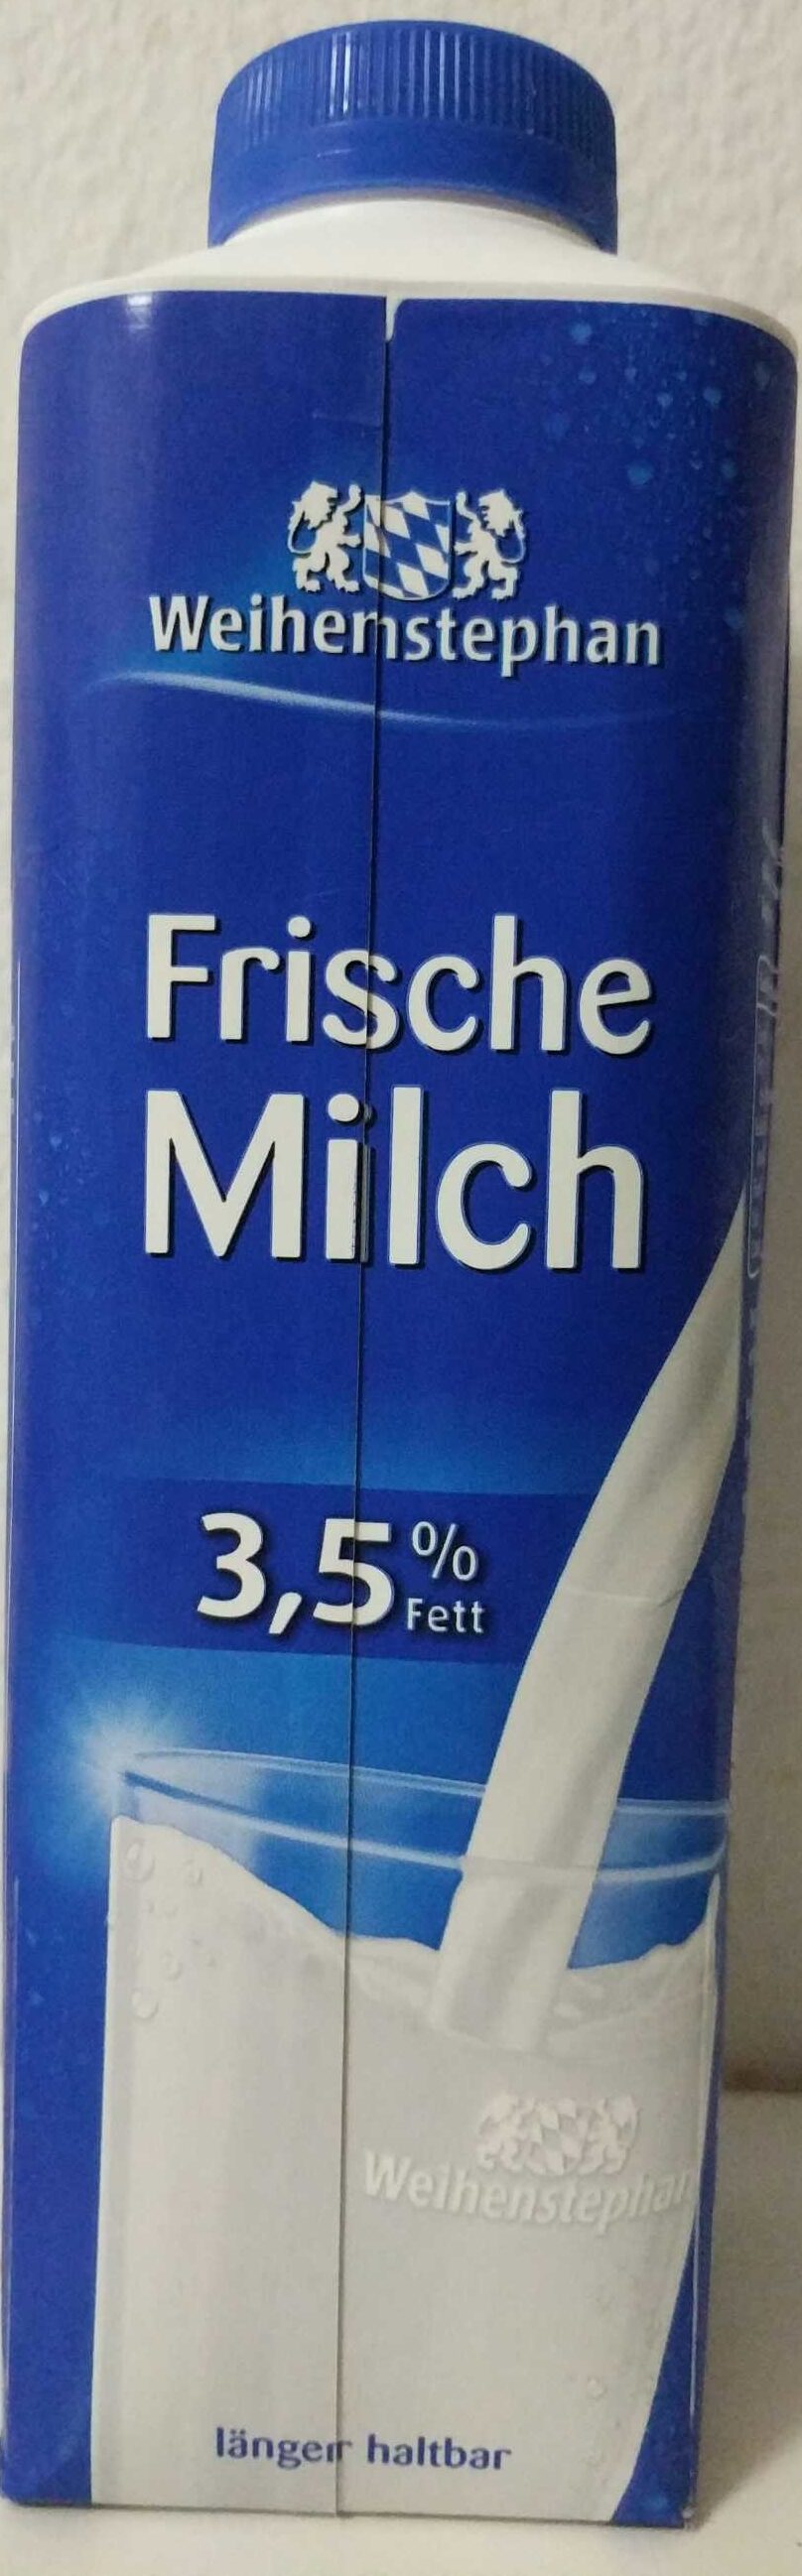 Weihenstephan Milch 3.5% - Produkt